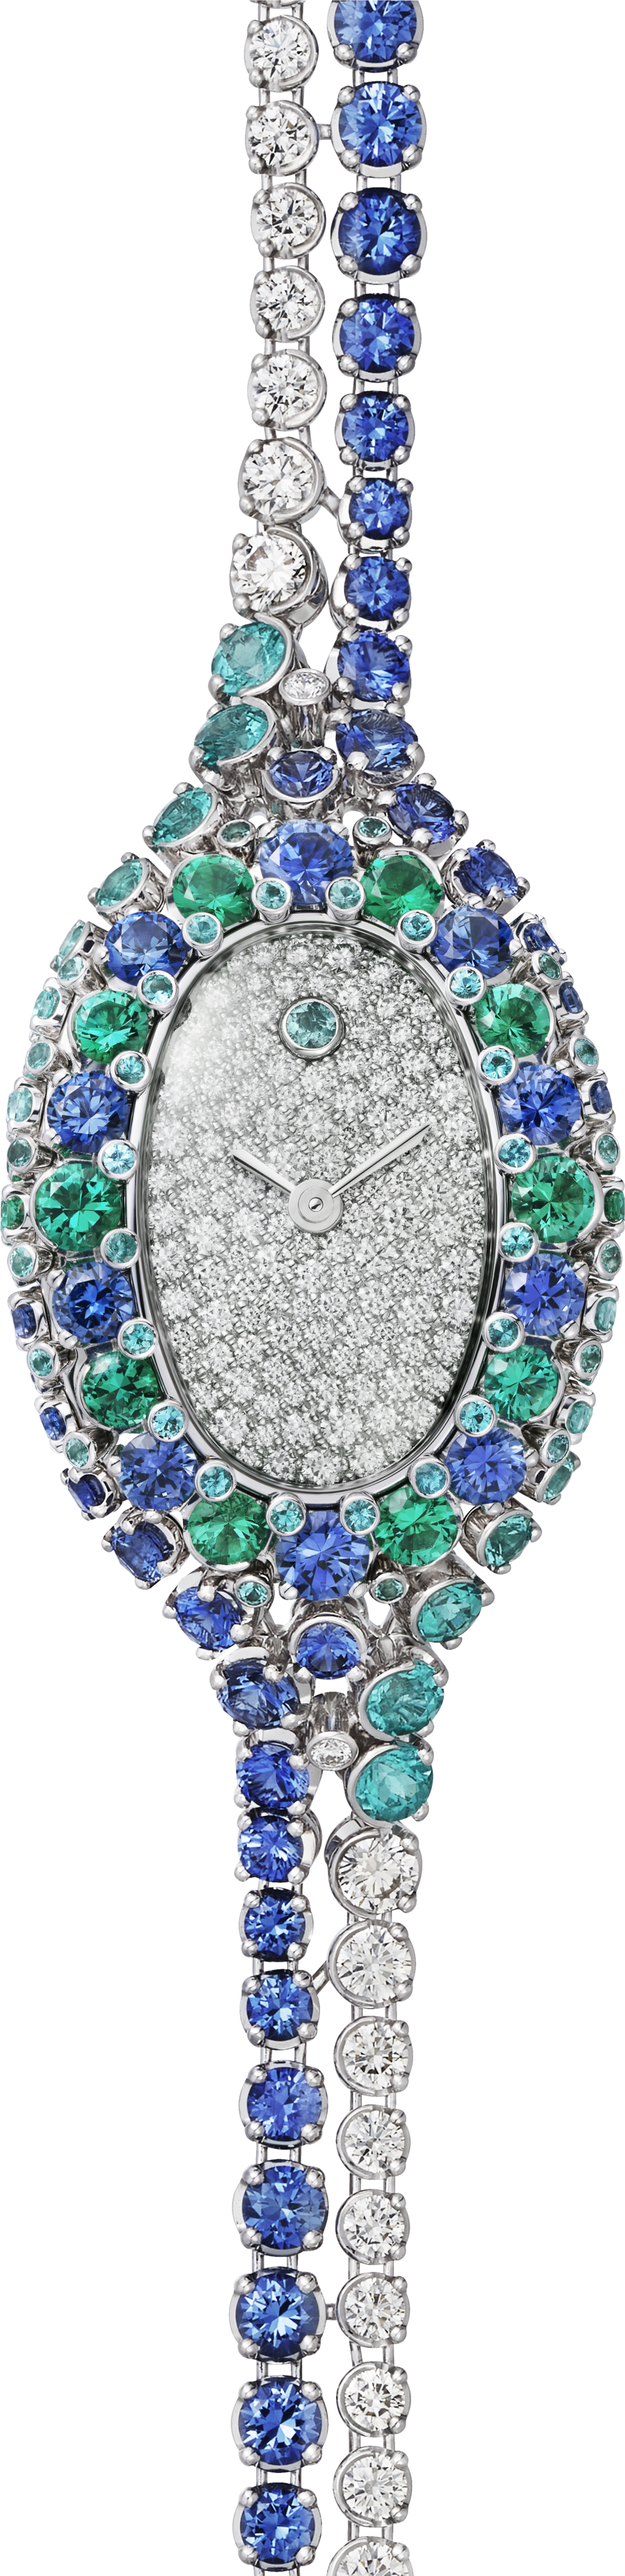 Reloj joya BaignoireTamaño mini, movimiento de cuarzo, oro blanco, zafiros, esmeraldas, turmalinas azules